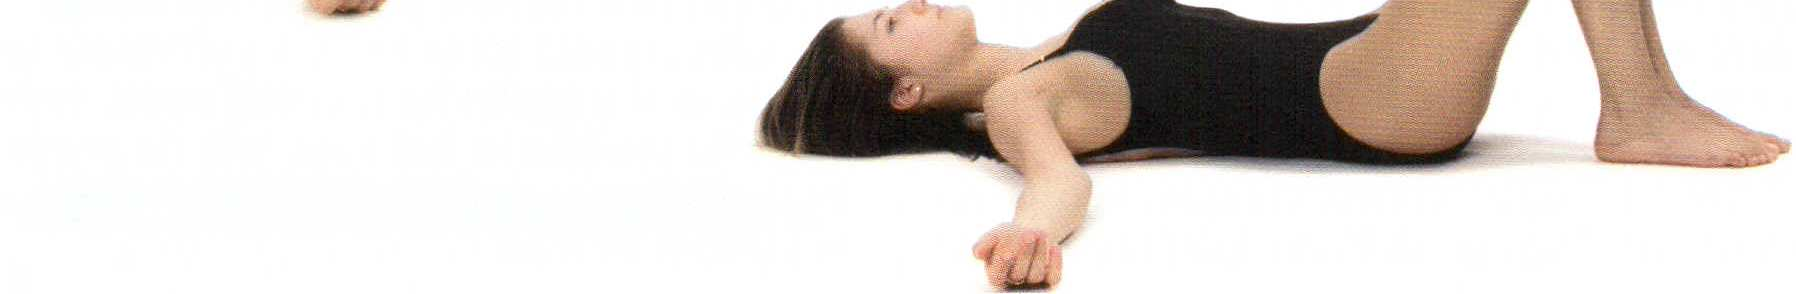 Presa di coscienza della colonna vertebrale e delle sue curve fisiologiche Arti superiori lungo i fianchi, palmo delle mani a terra, arti inferiori distesi e rilassati con le punte dei piedi